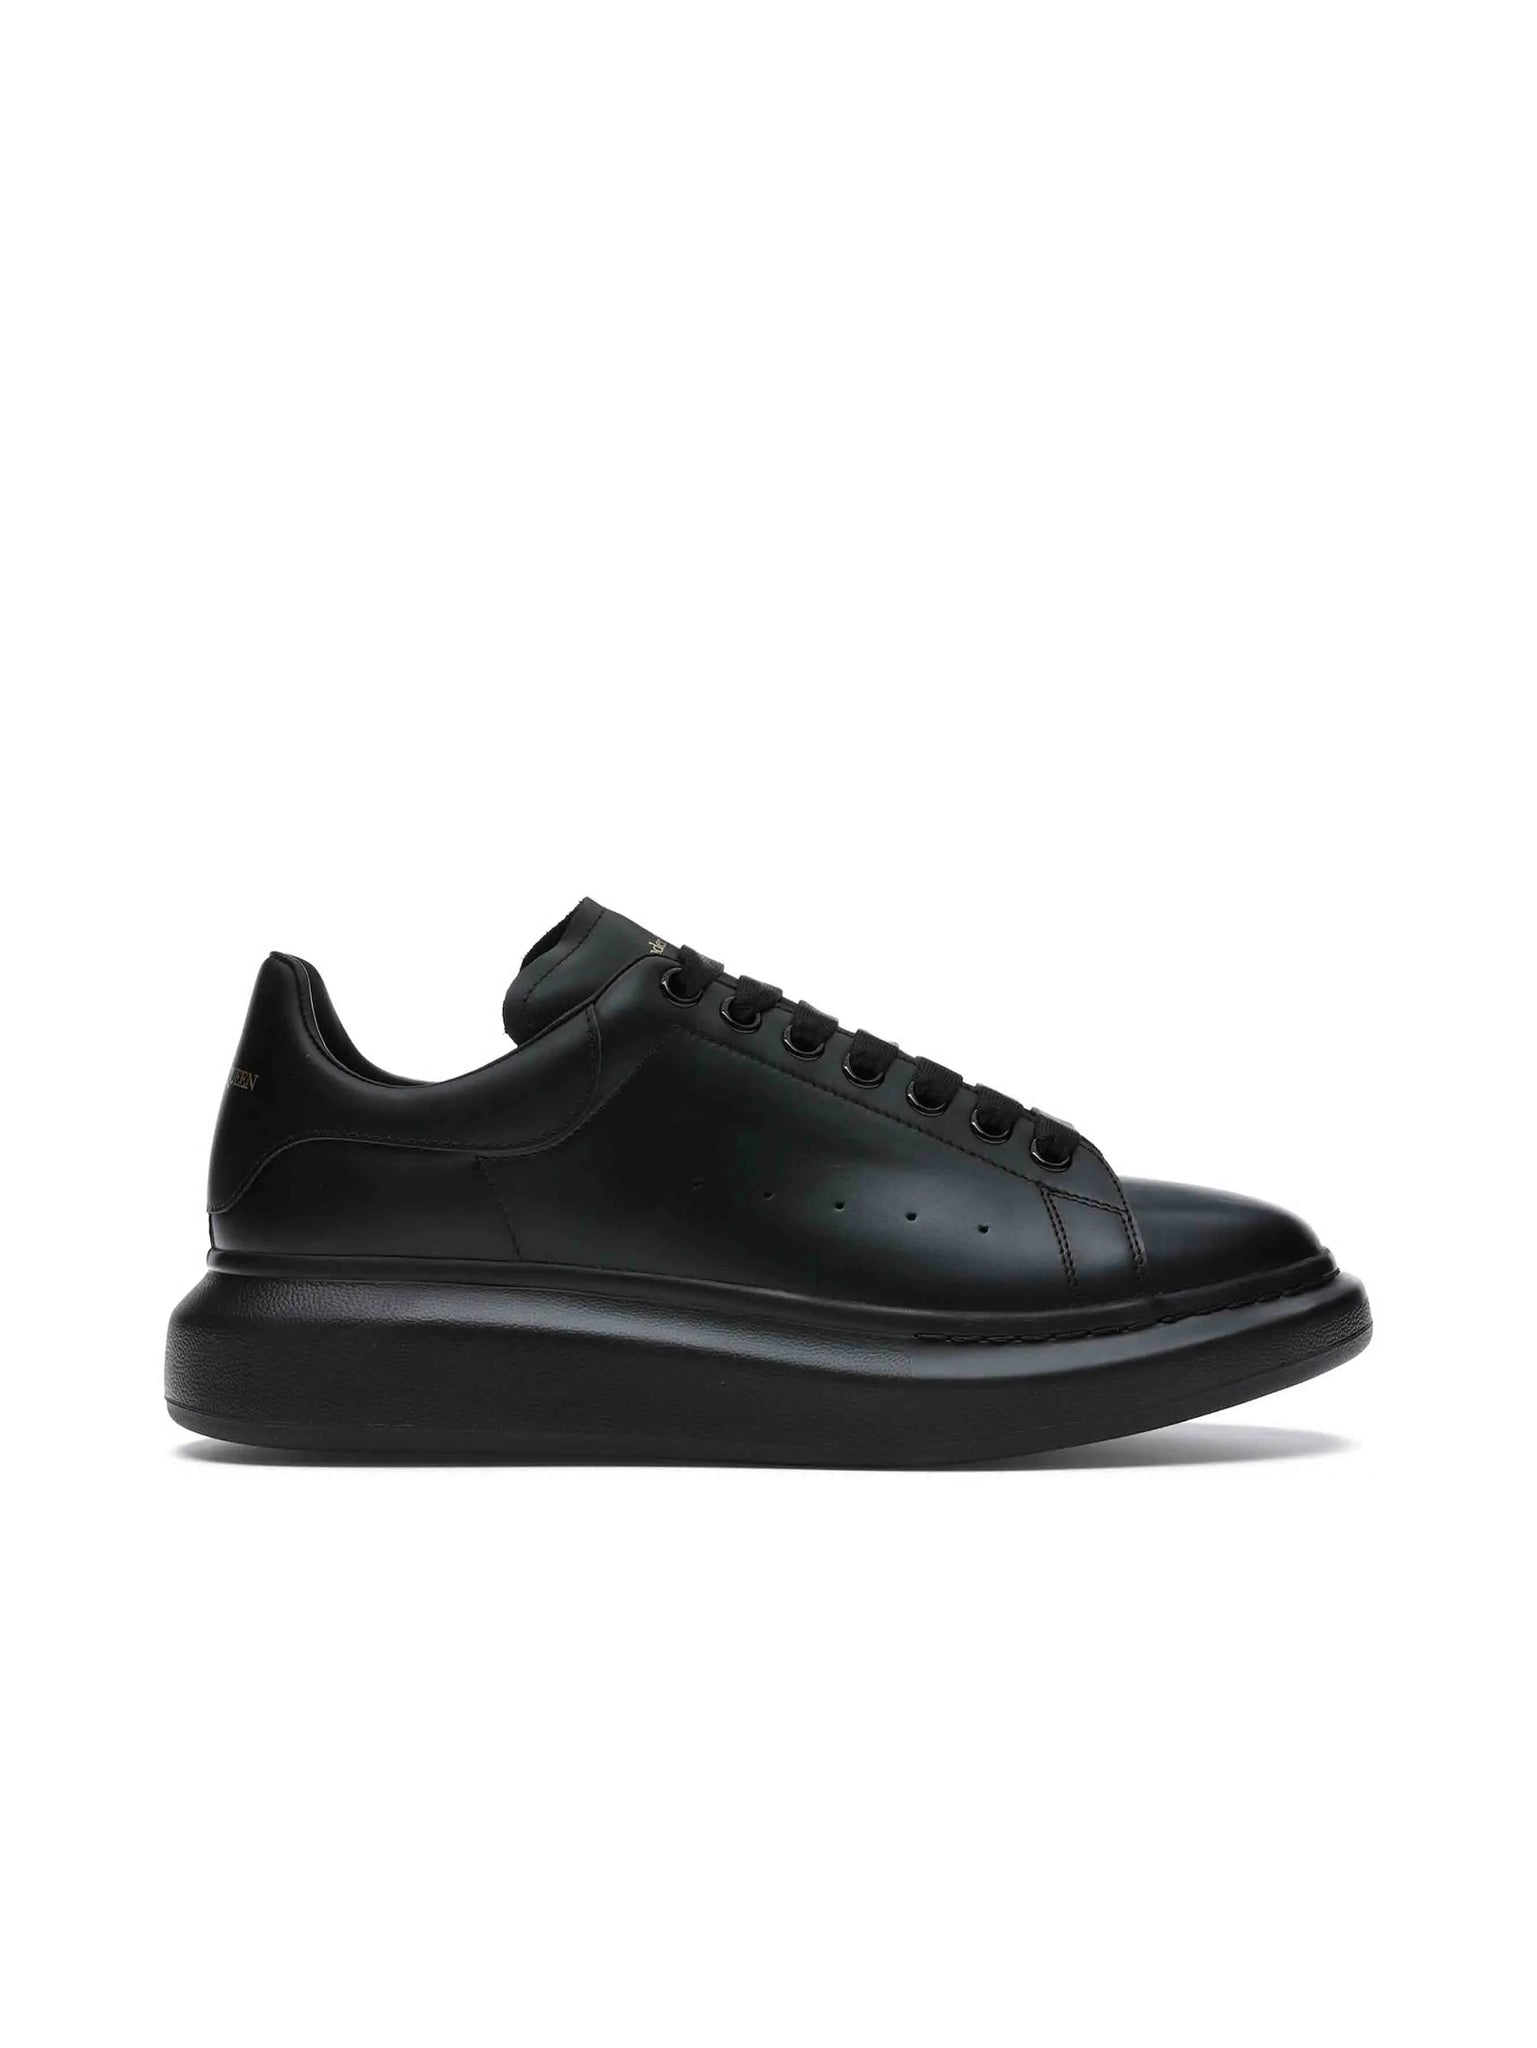 Alexander Mcqueen Oversized Black Sneakers - Prior